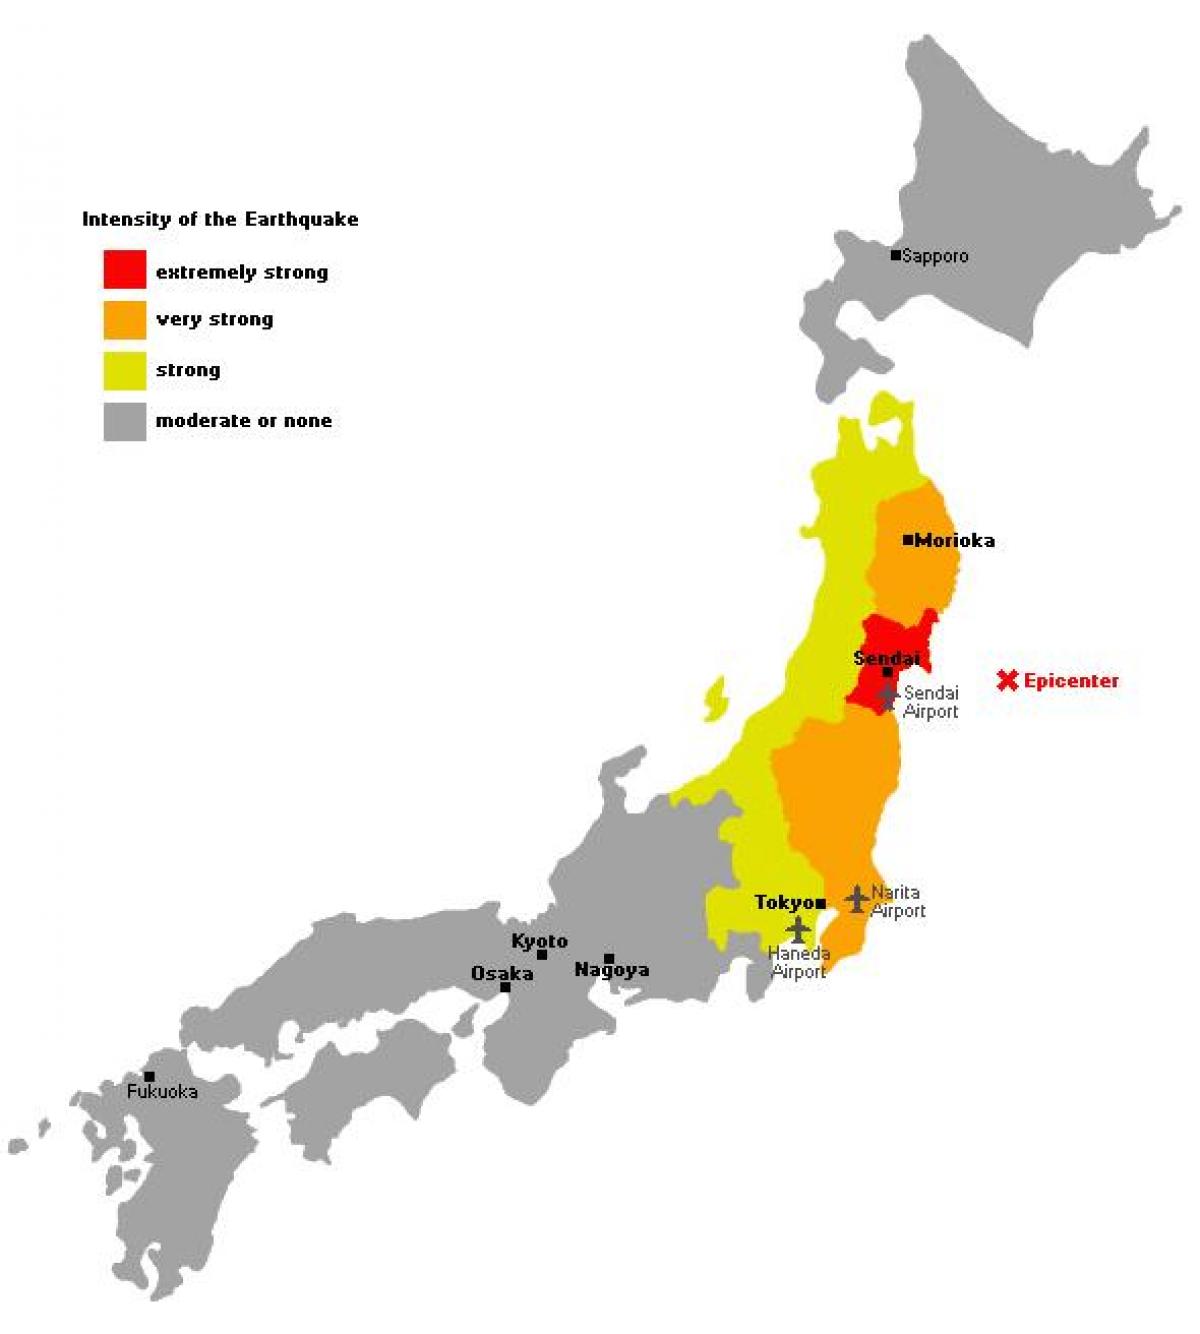 mapa do japão tsunami